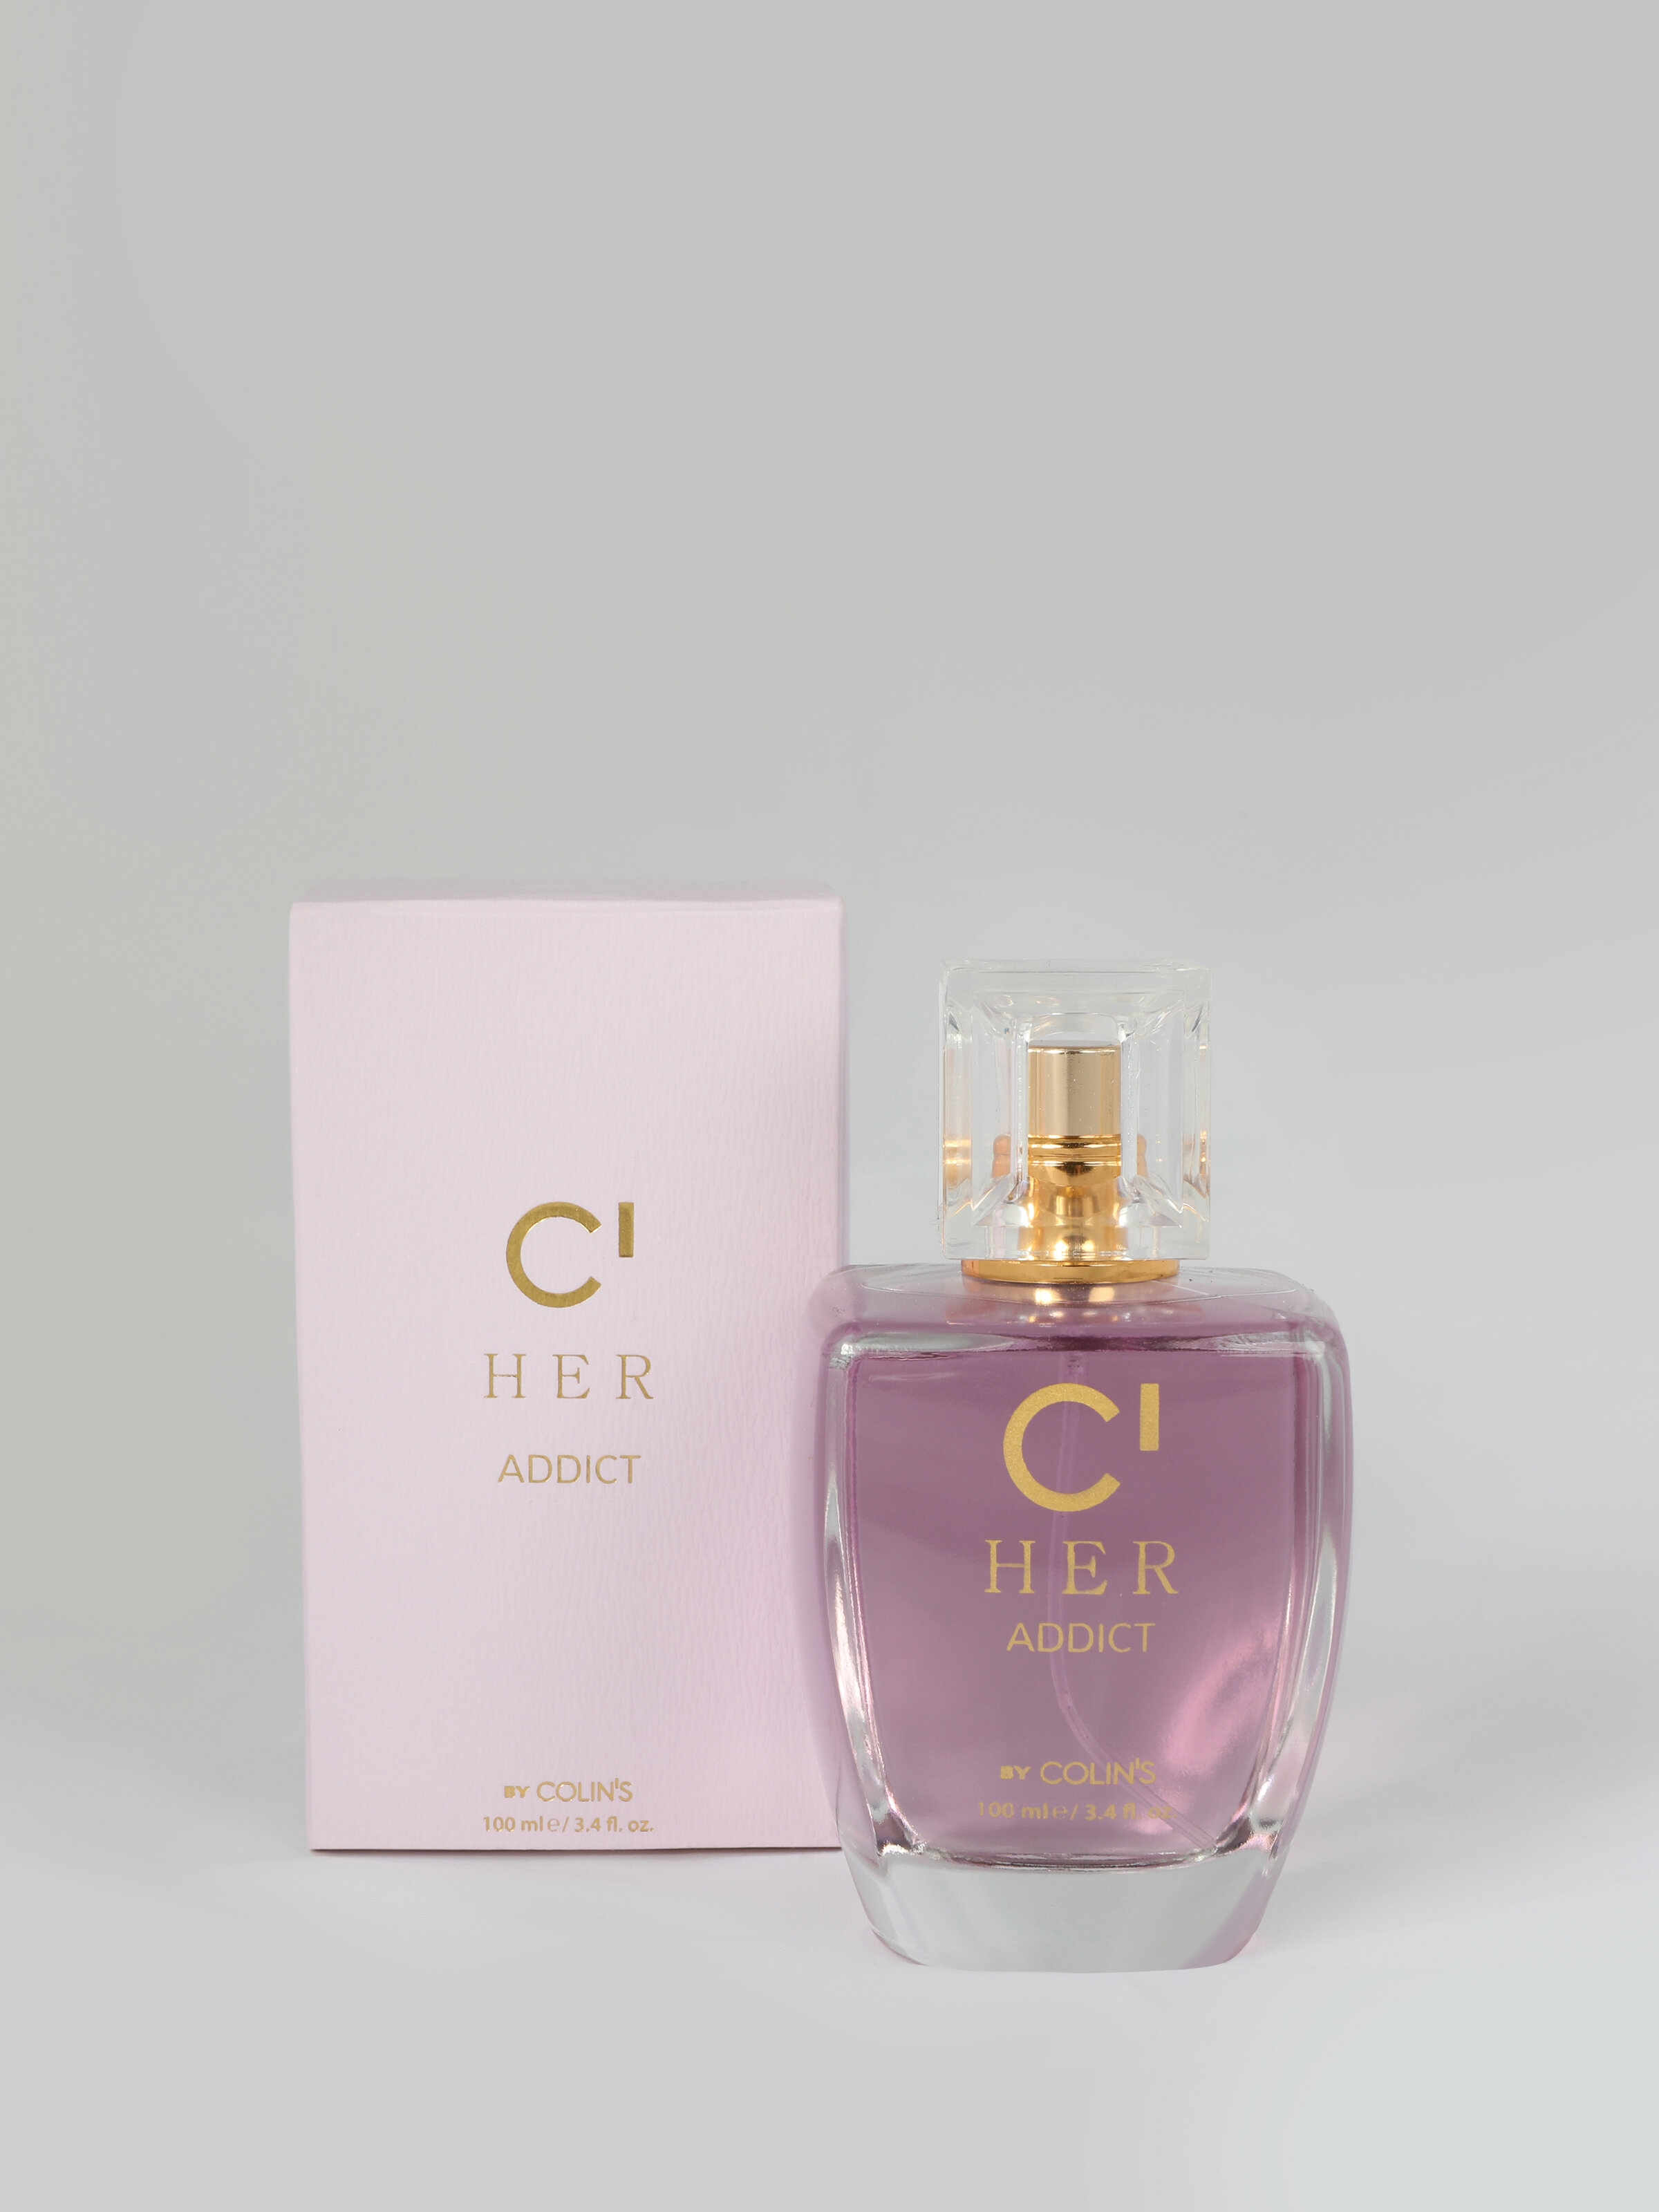 Colins C HER – ADDICT Çiçeksi Hafif Baharatlı Kadın Parfüm. 1